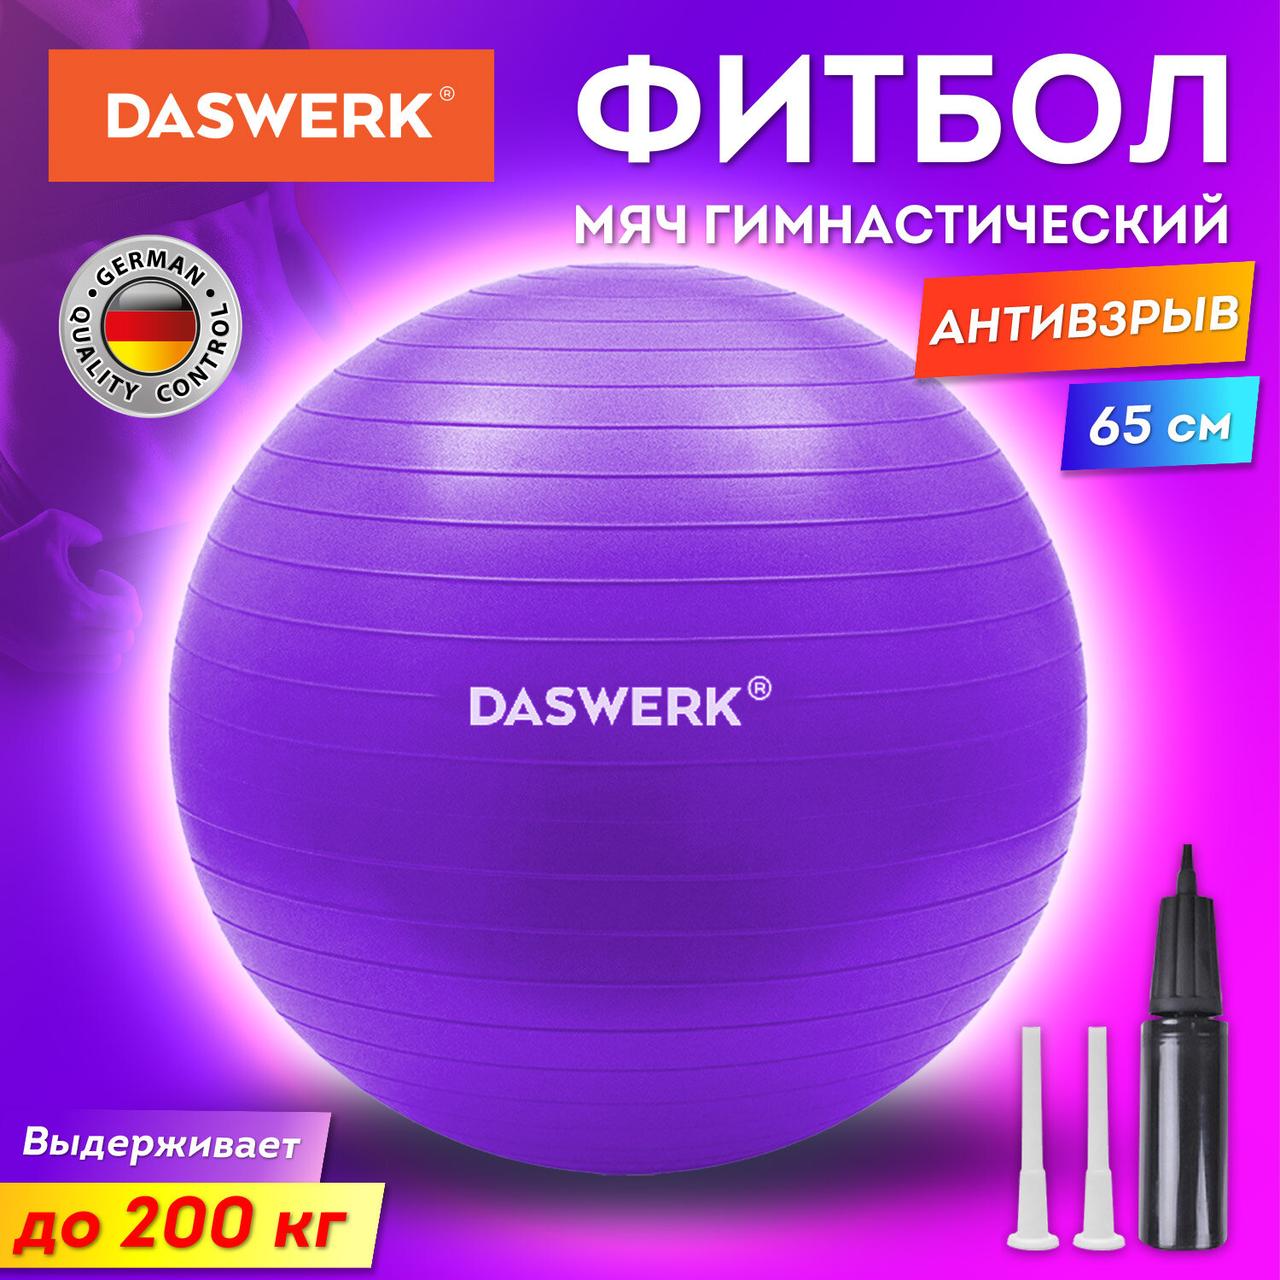 Мяч гимнастический (фитбол) 65 см с эффектом «антивзрыв», с ручным насосом, фиолетовый, DASWERK (680017)